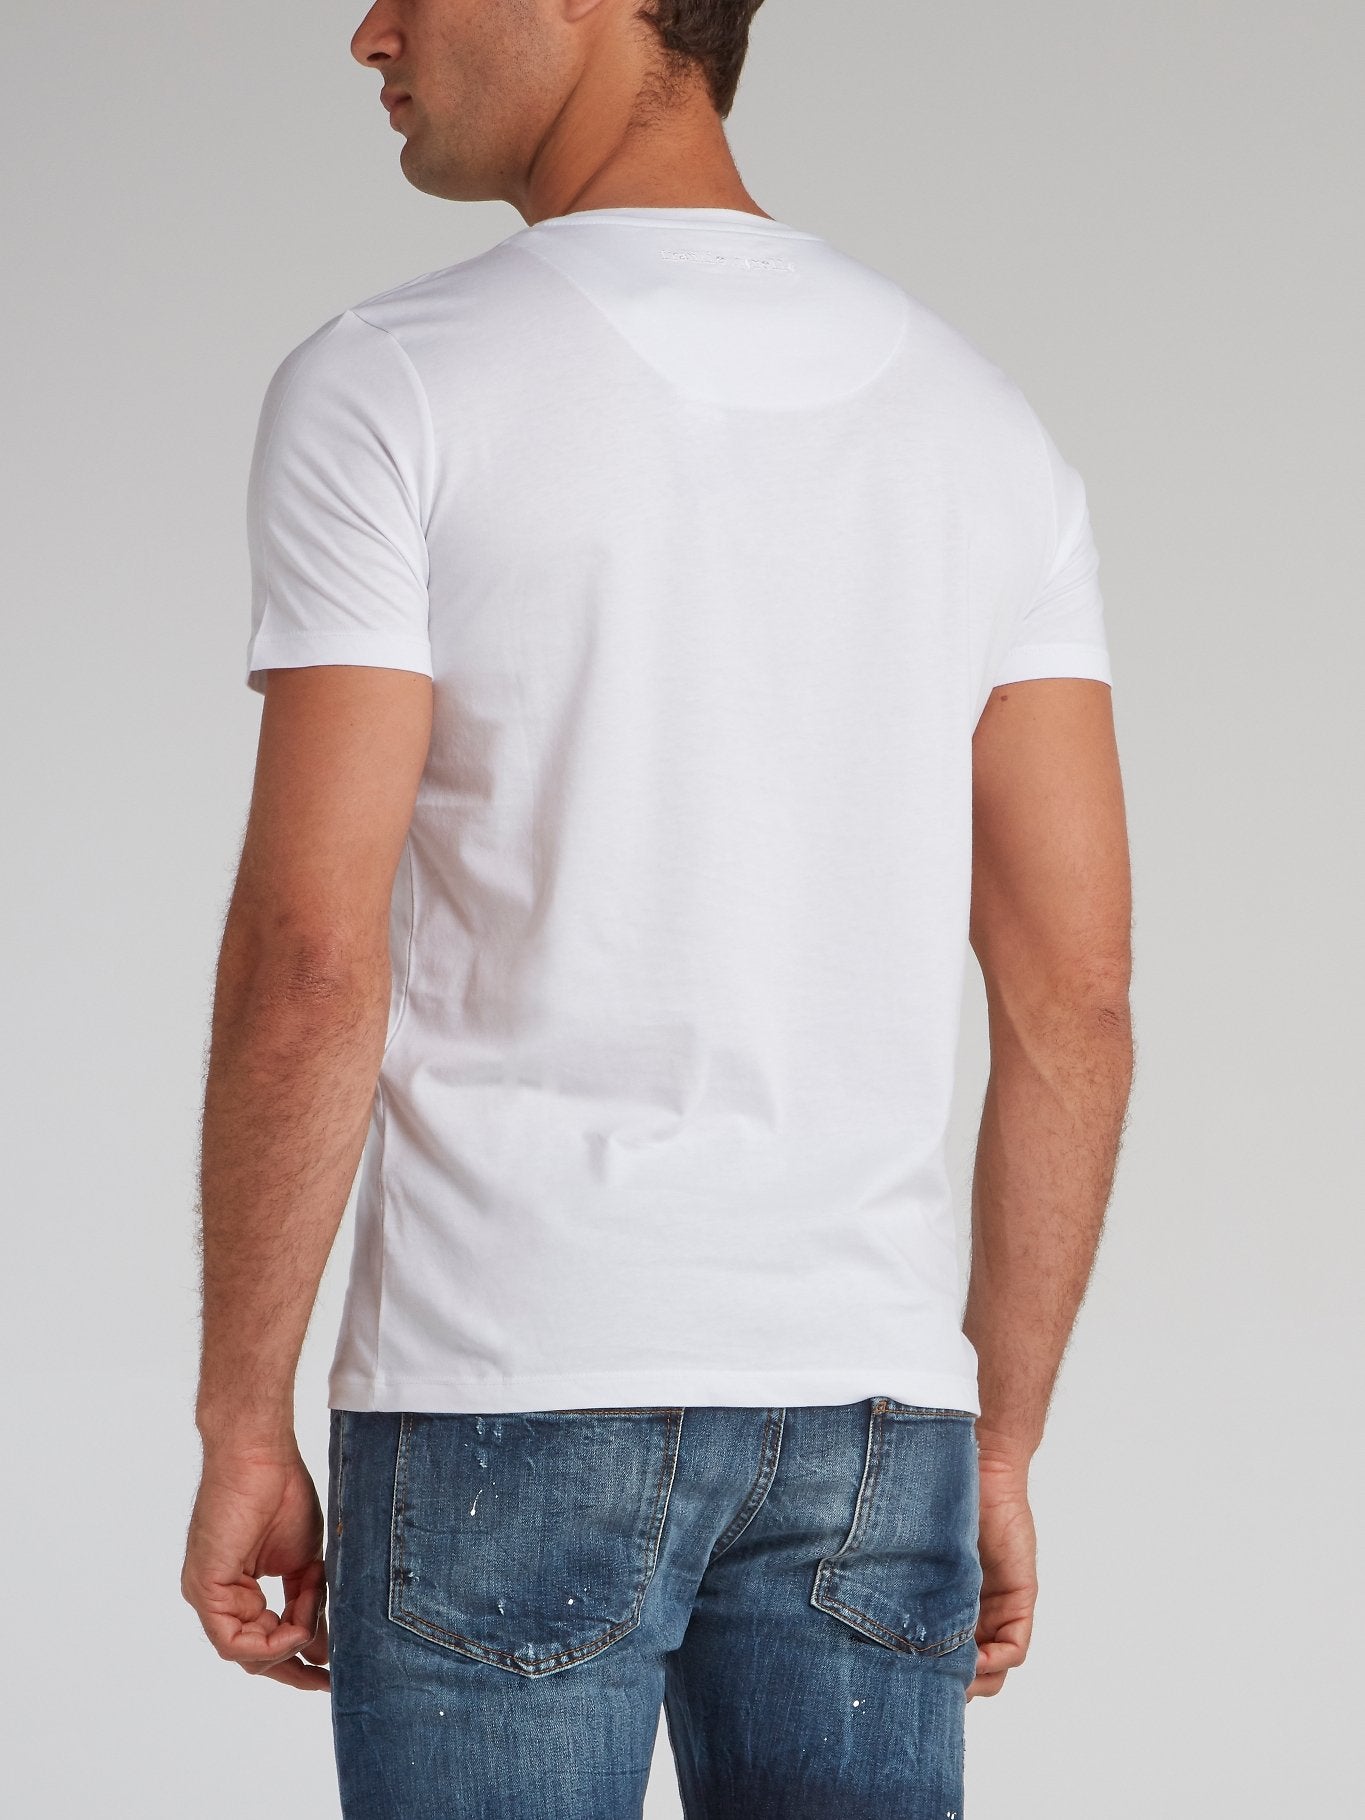 Huberto White Graphic Print T-Shirt